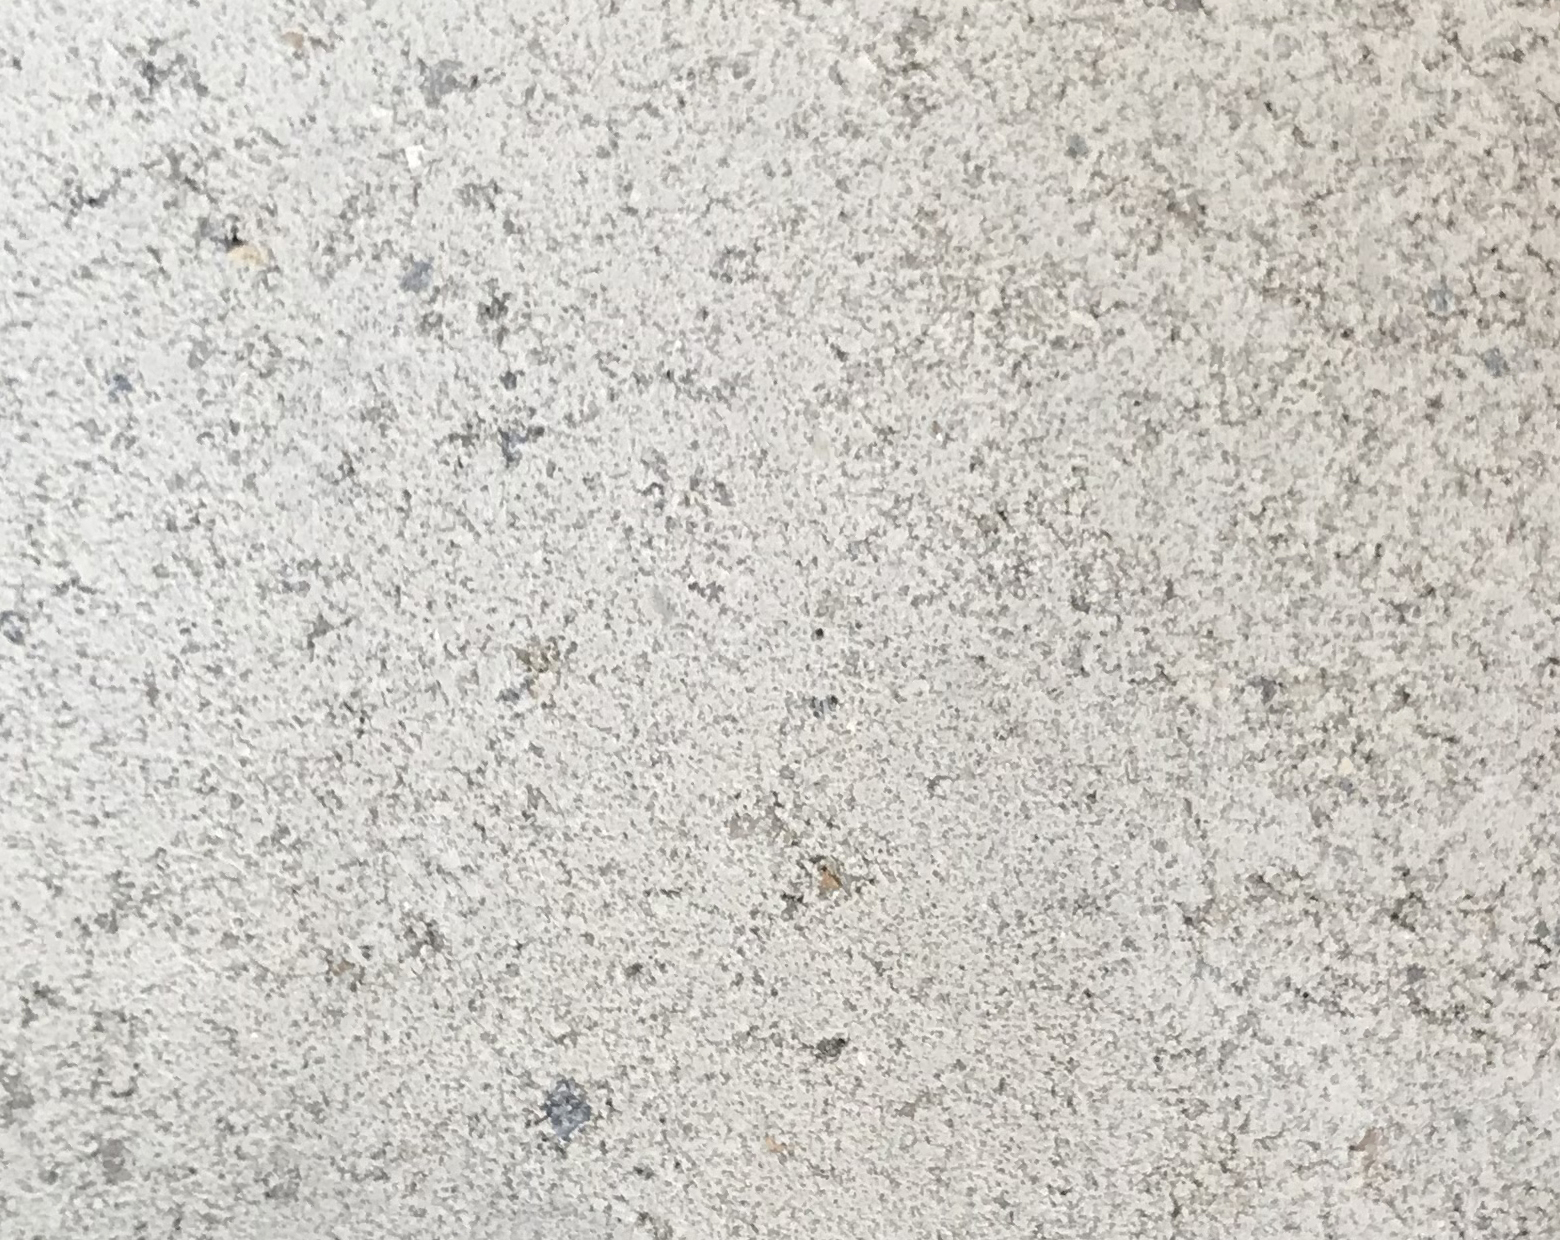 Harmo roc nevadaset, rustica-serie, ovaal d=3,00mx7,00m, gebroken wit, beton